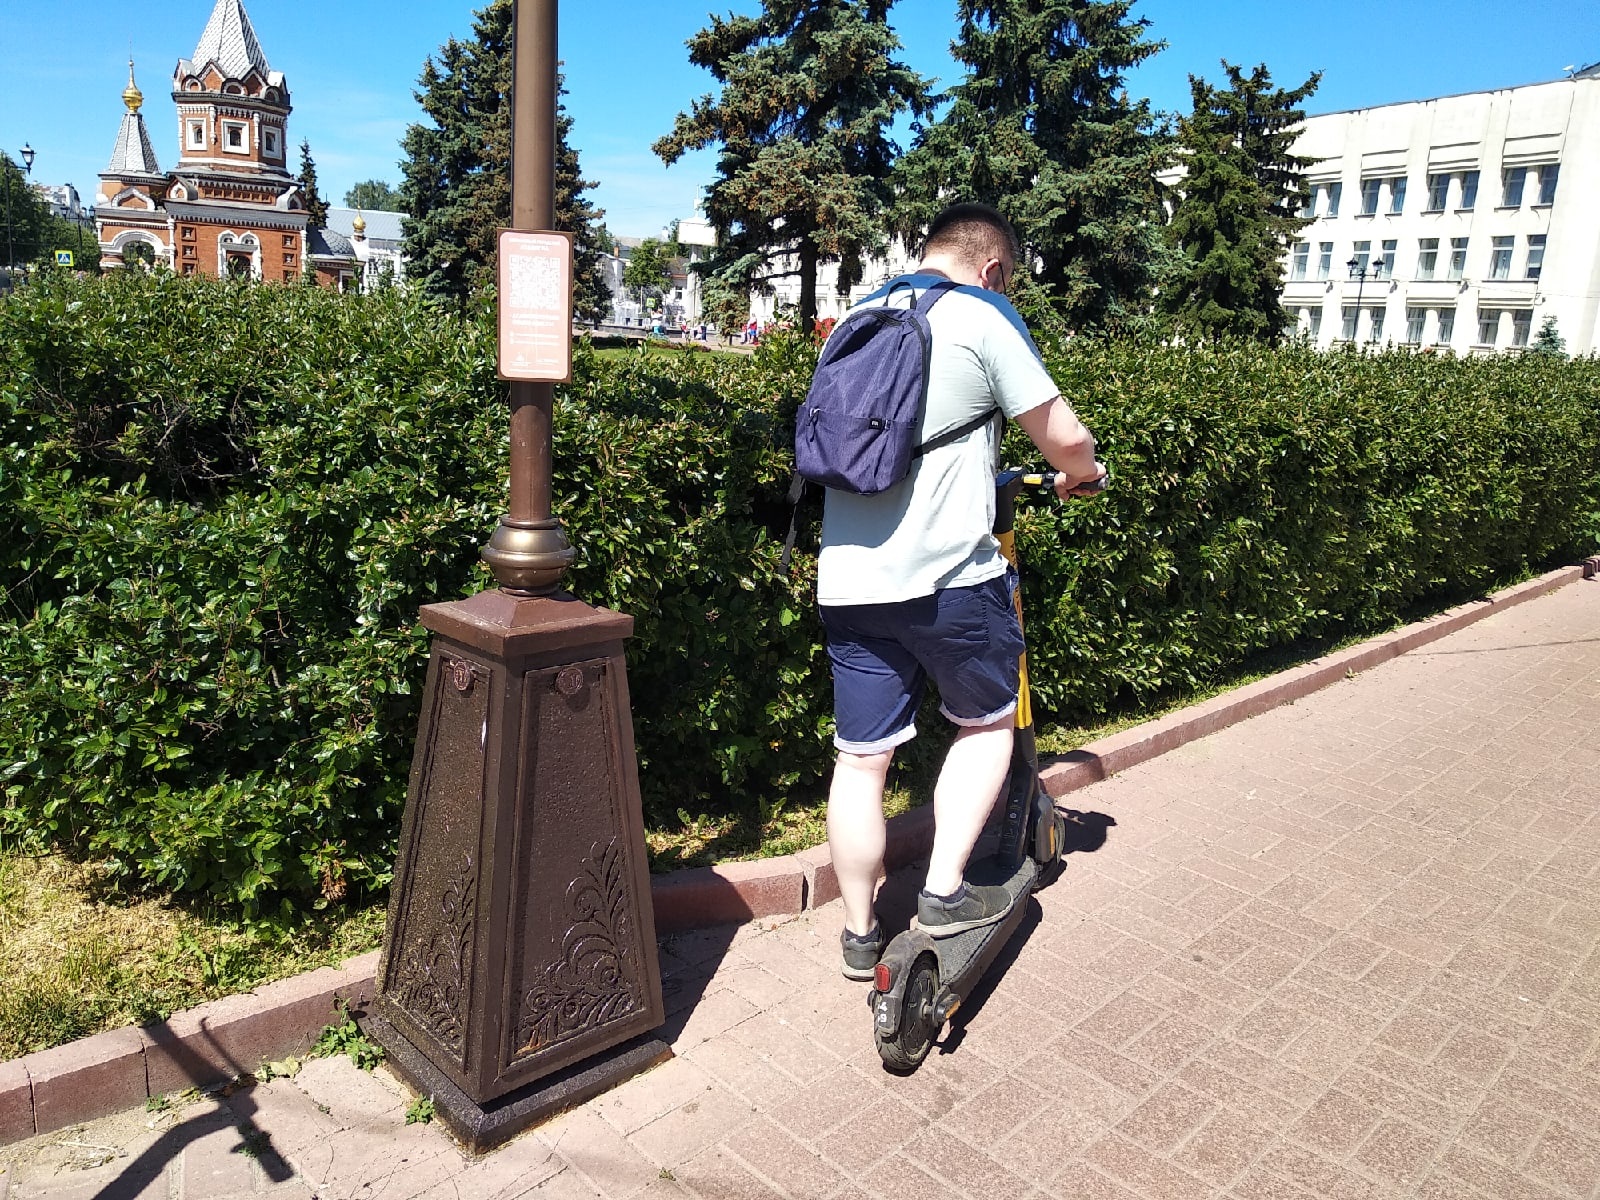 "Невозможно ходить по тротуарам!": ярославцы требуют убрать электросамокаты из центра